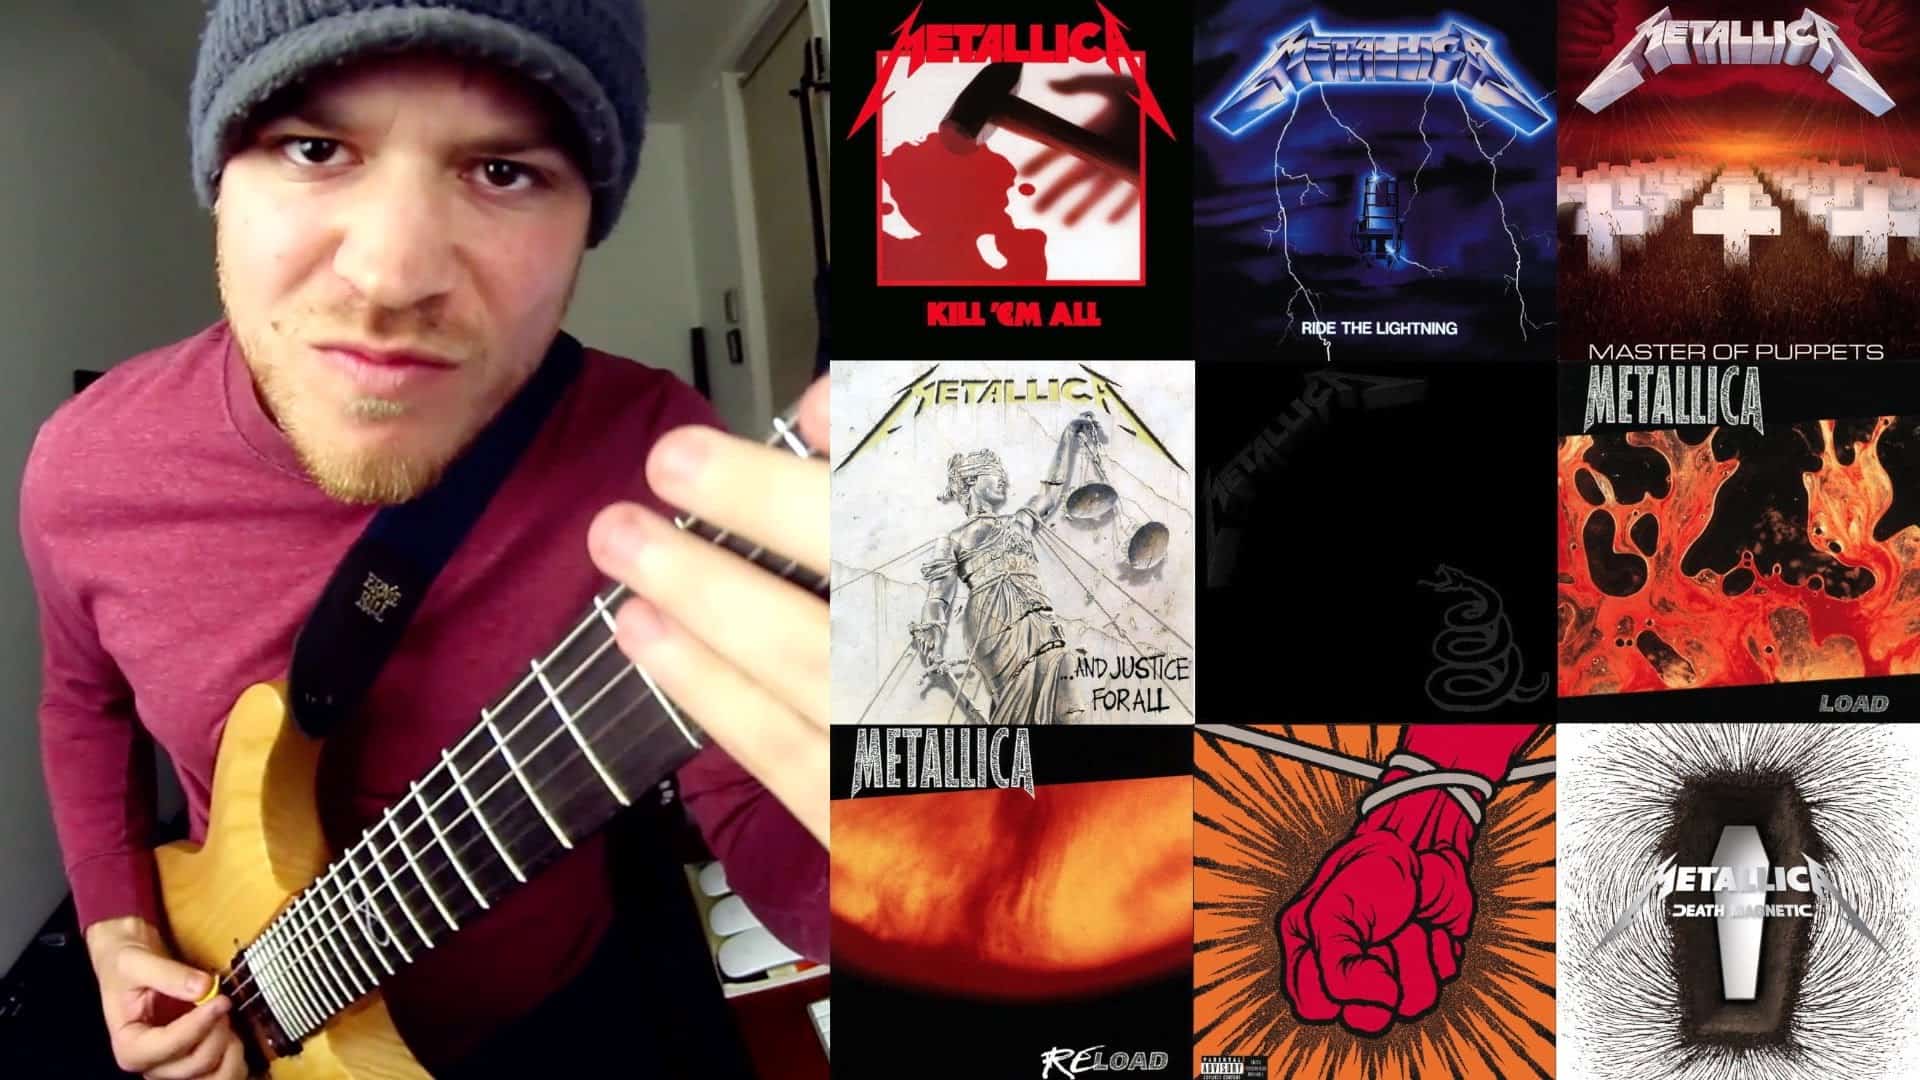 Gach amhrán Metallica i 4 nóiméad